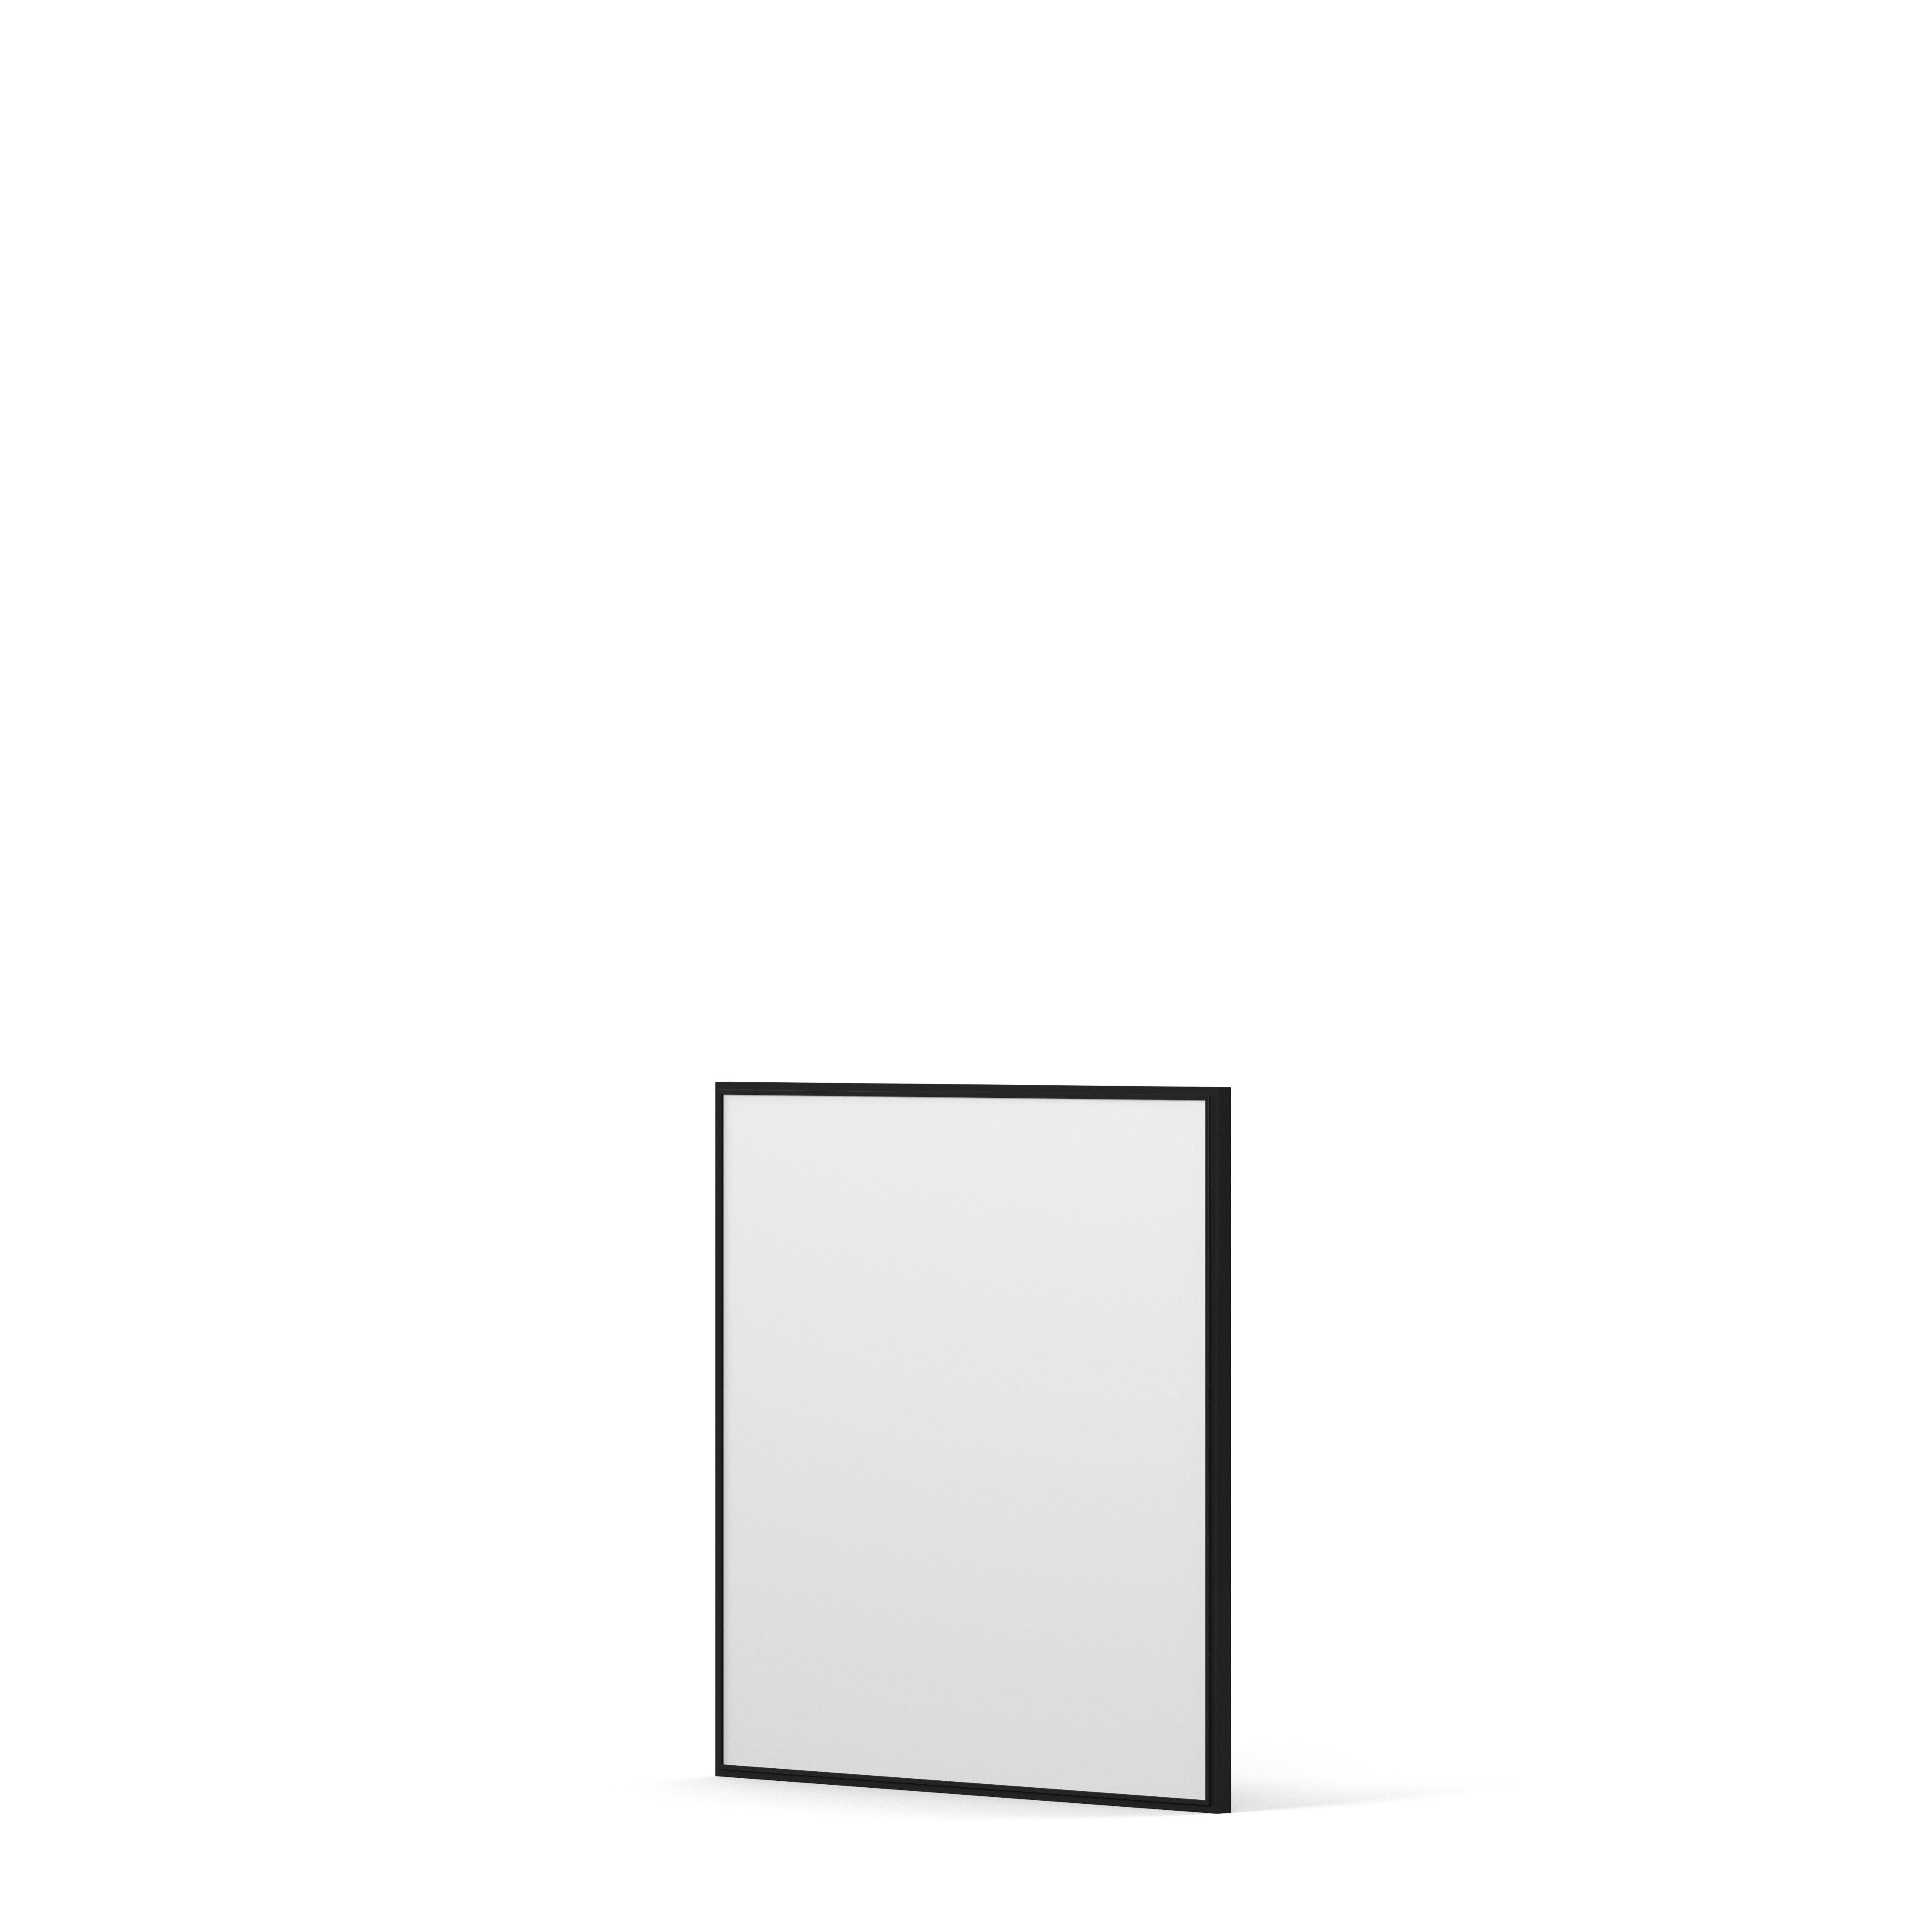 Englesson Speglar Cube Spegel Kvadratisk #färg_Edge Black #Colour_Edge Black